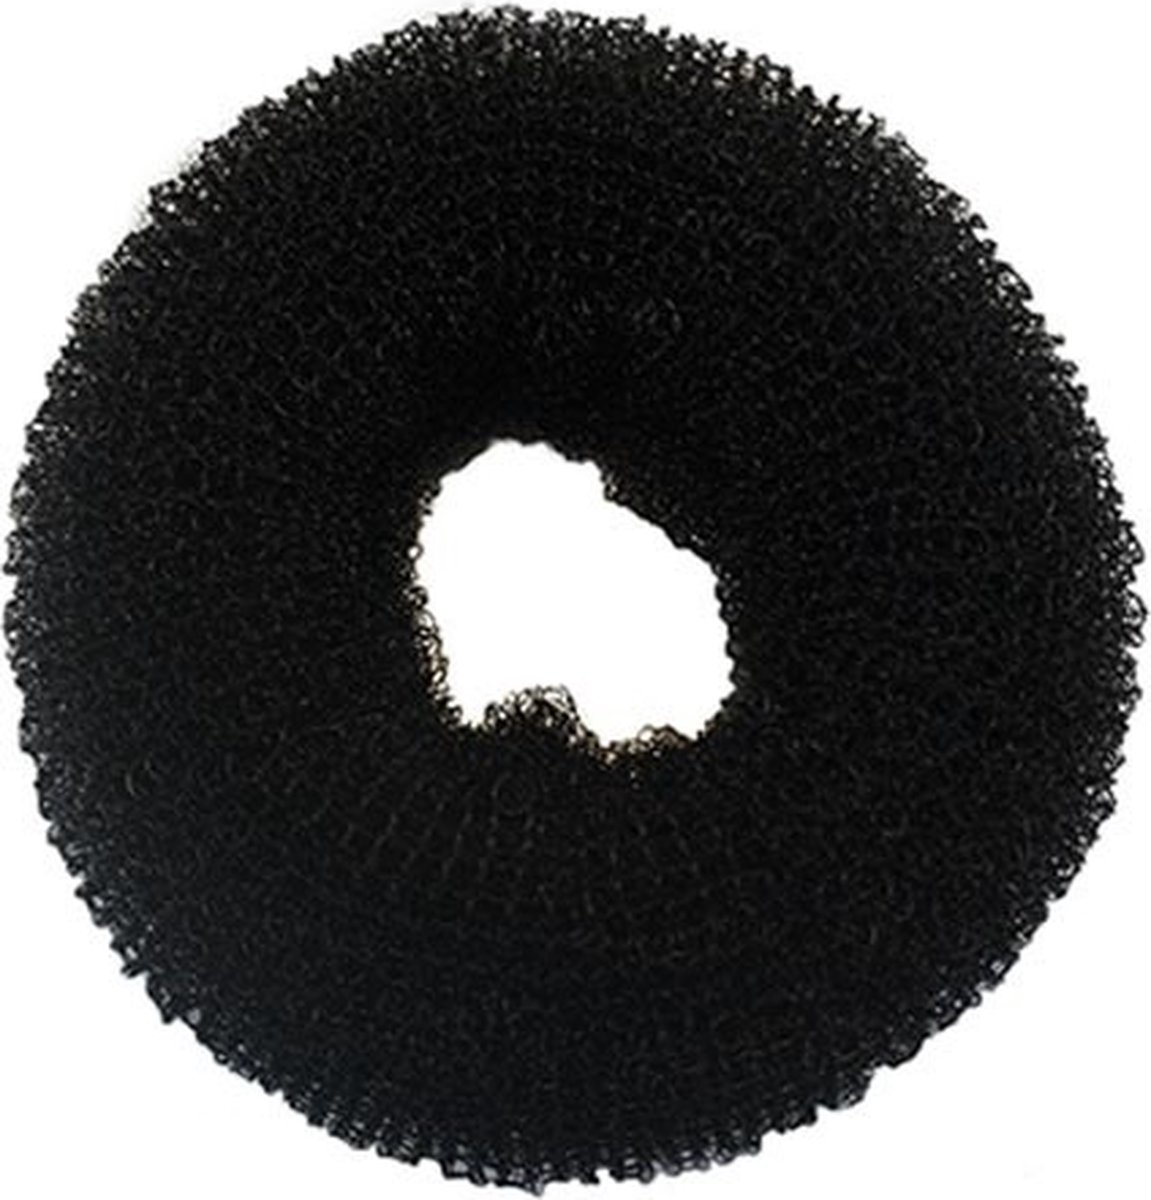 Haardonut Bun Klein 6cm Zwart Haar Donut Knot Hulpmiddel